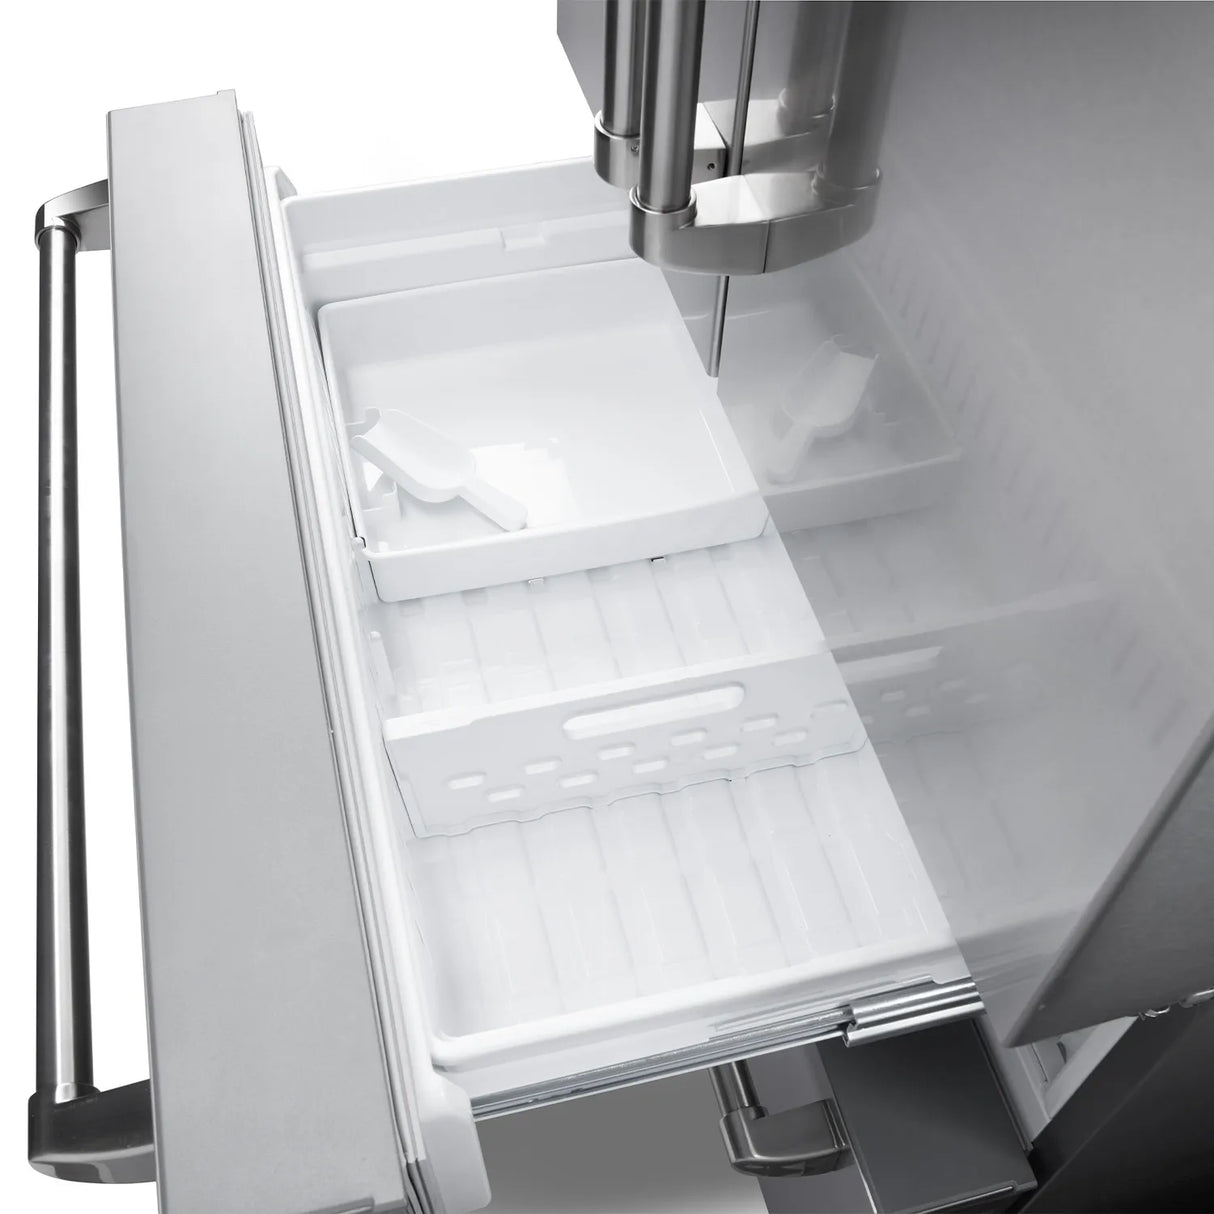 THOR Kitchen - 4-Piece Kitchen Package - 36" Liquid Propane Range, 36" Wall Mount Range Hood, 24" Dishwasher & 36" Refrigerator